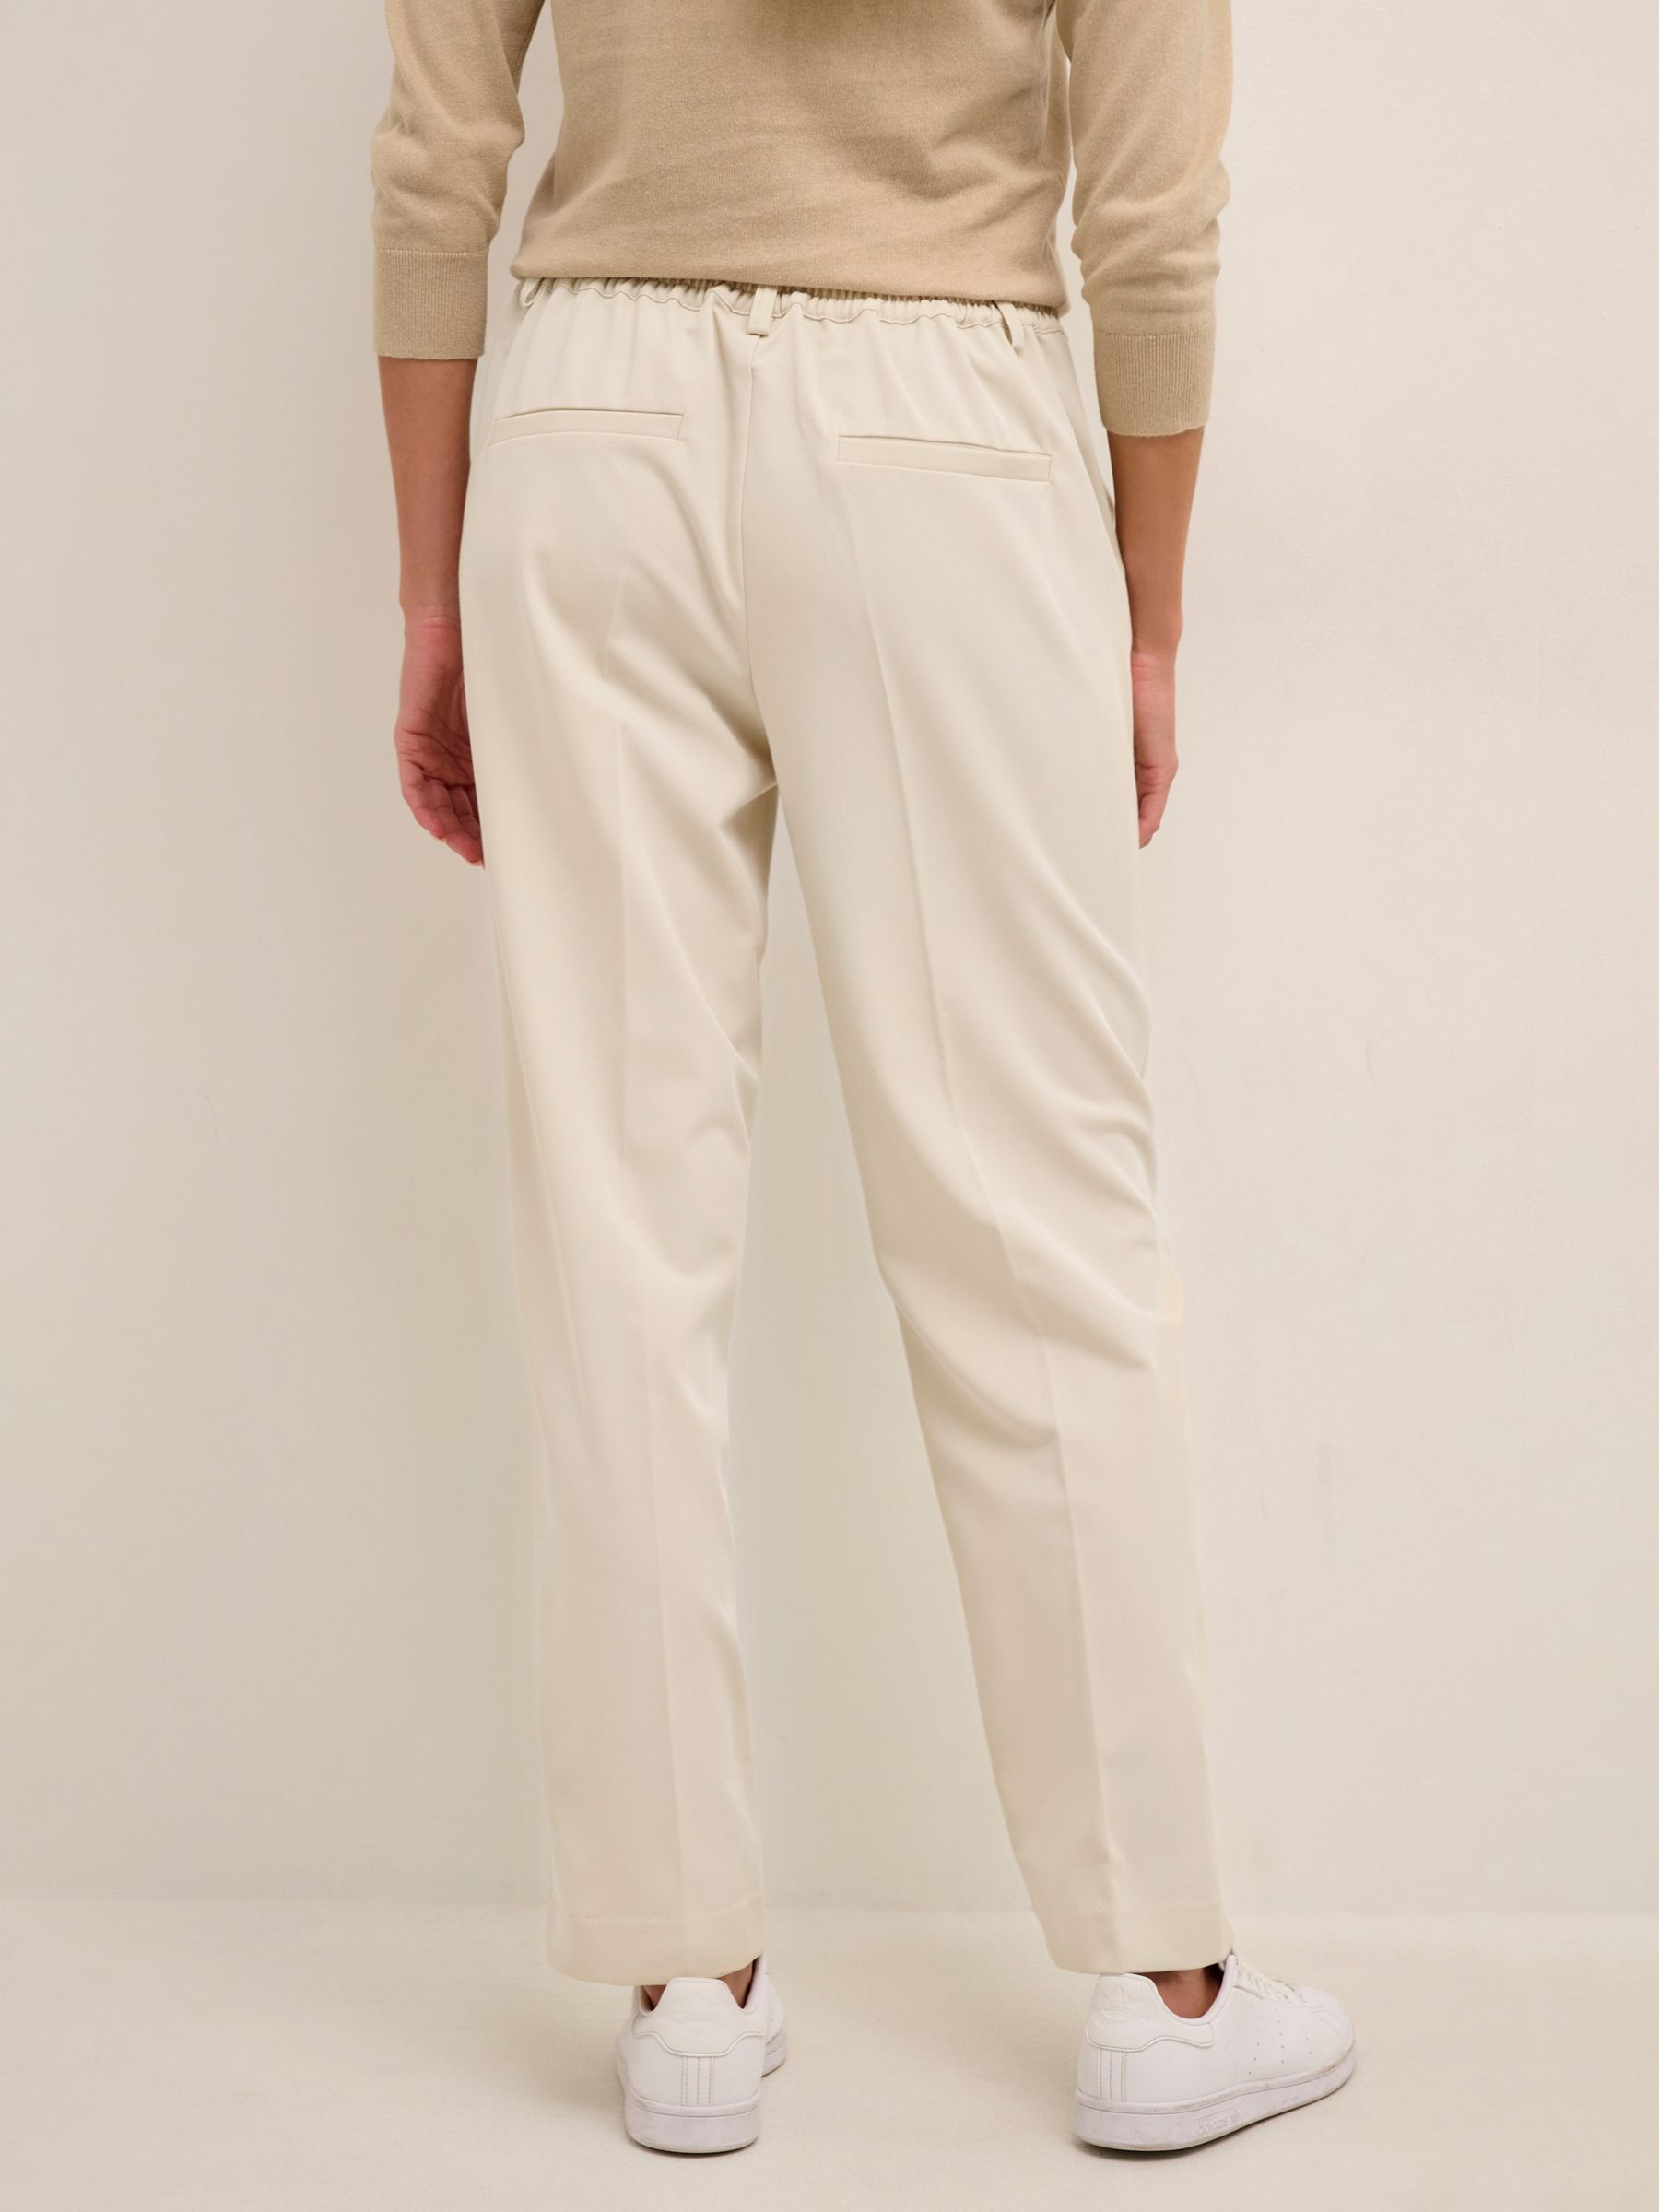 KAFFE Sakura Slim Tailored Trousers, Antique White at John Lewis & Partners